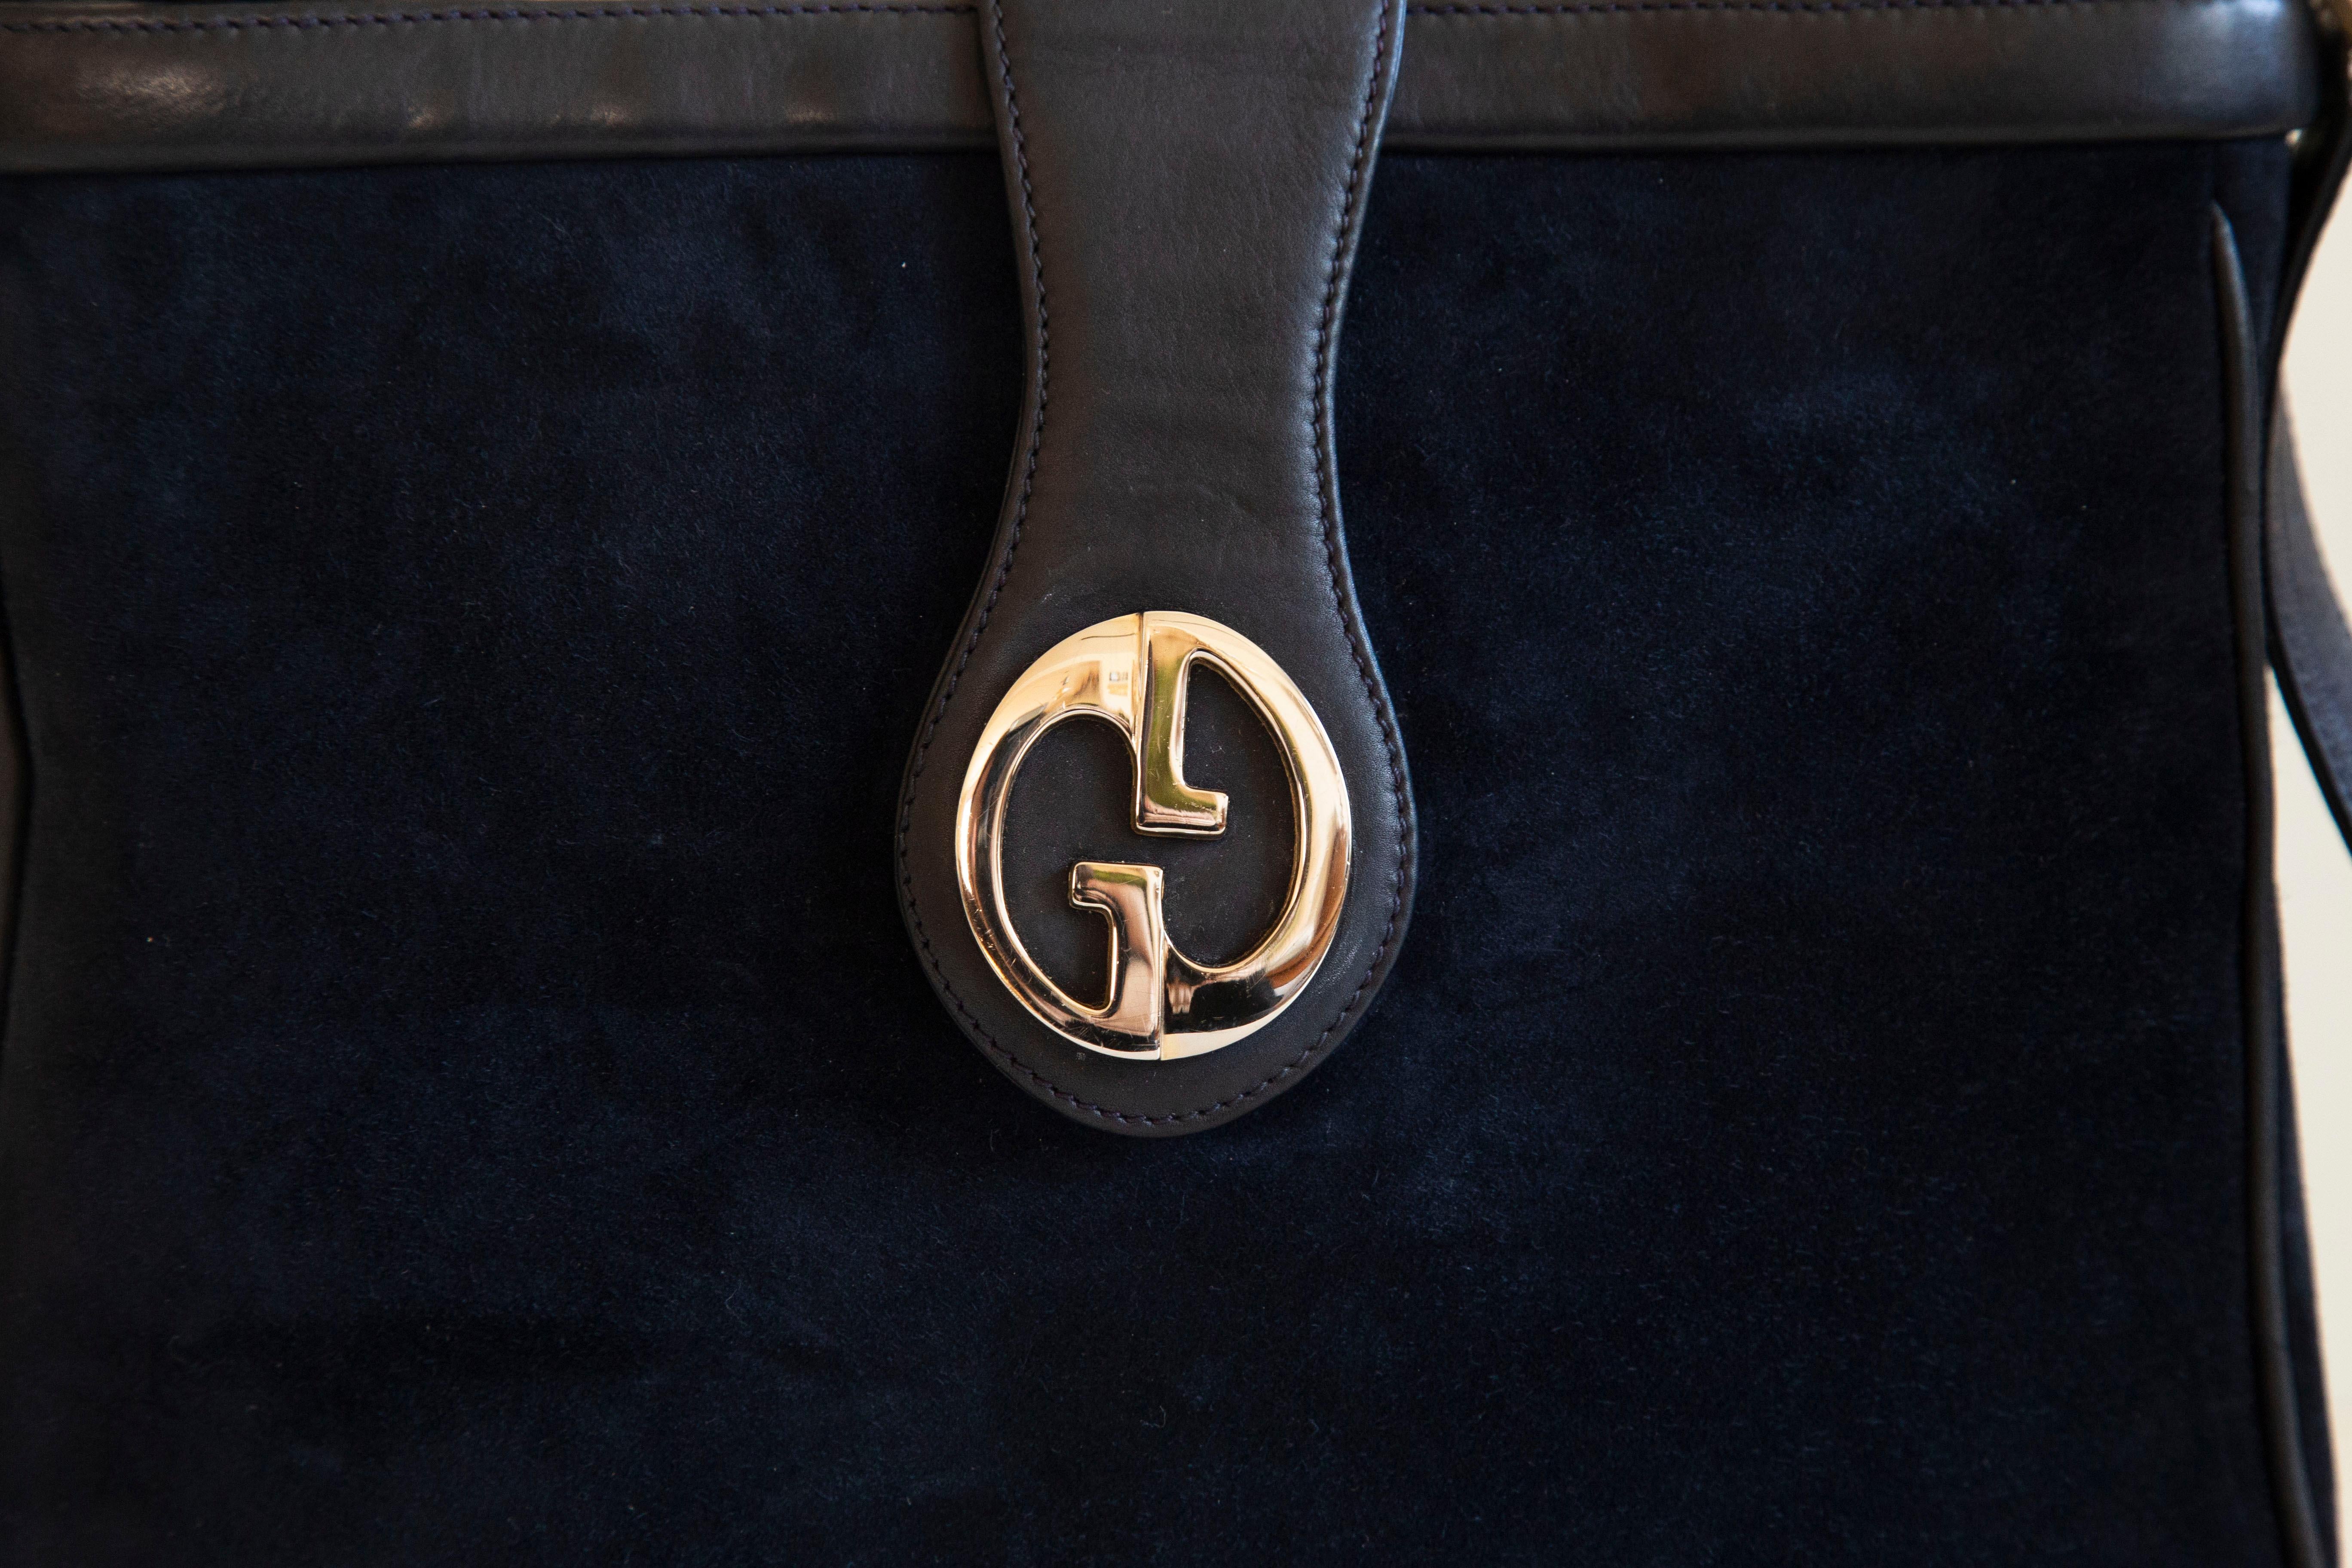 Vintage Gucci GG Umhängetasche, ca. 1970er Jahre, Italien. Die Tasche ist aus dunkelblauem Wildleder gefertigt, hat silberfarbene GG Beschläge und ist mit weichem dunkelblauem Leder ausgestattet. Das Innere ist mit dunkelblauem Leder ausgekleidet